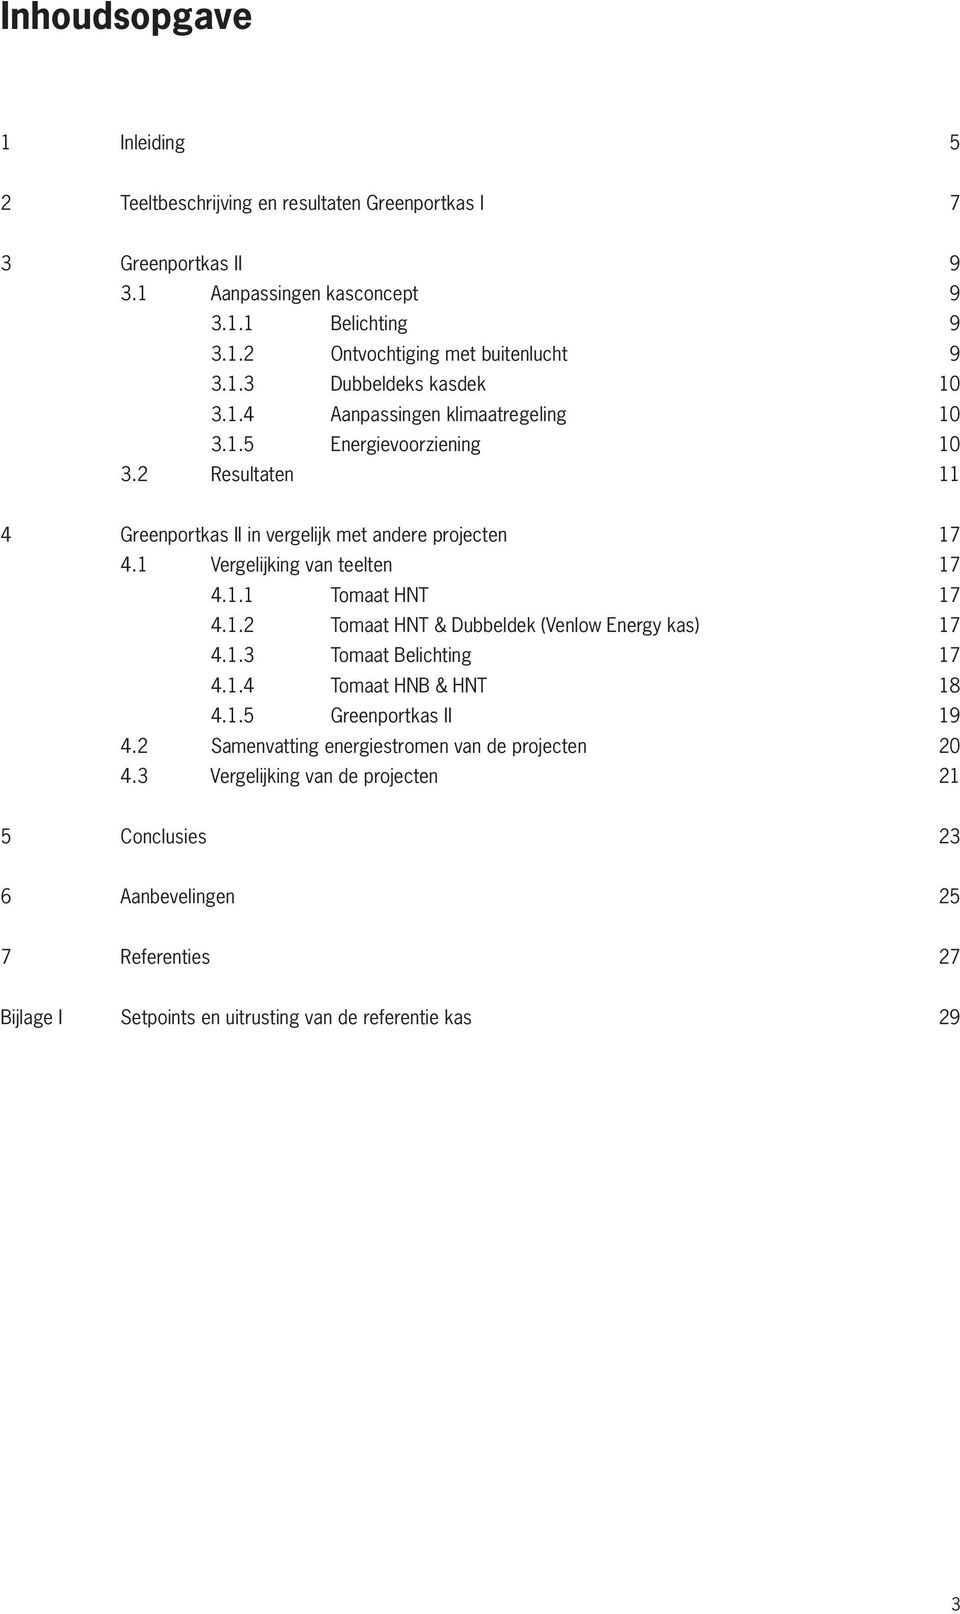 1 Vergelijking van teelten 17 4.1.1 Tomaat HNT 17 4.1.2 Tomaat HNT & Dubbeldek (Venlow Energy kas) 17 4.1.3 Tomaat Belichting 17 4.1.4 Tomaat HNB & HNT 18 4.1.5 Greenportkas II 19 4.